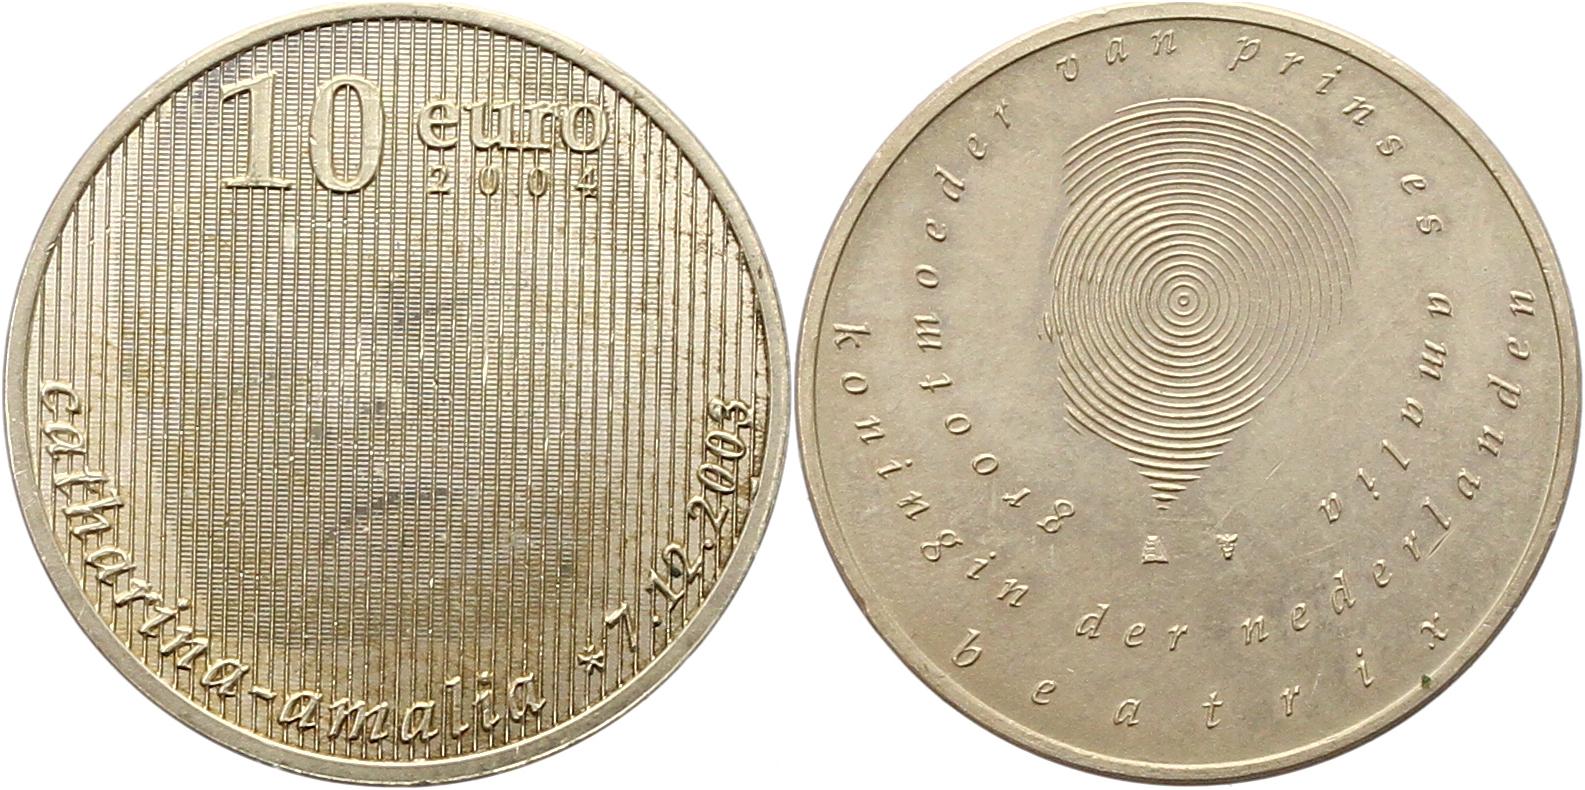  8043 Niederlande 10 Euro Silber 2004   